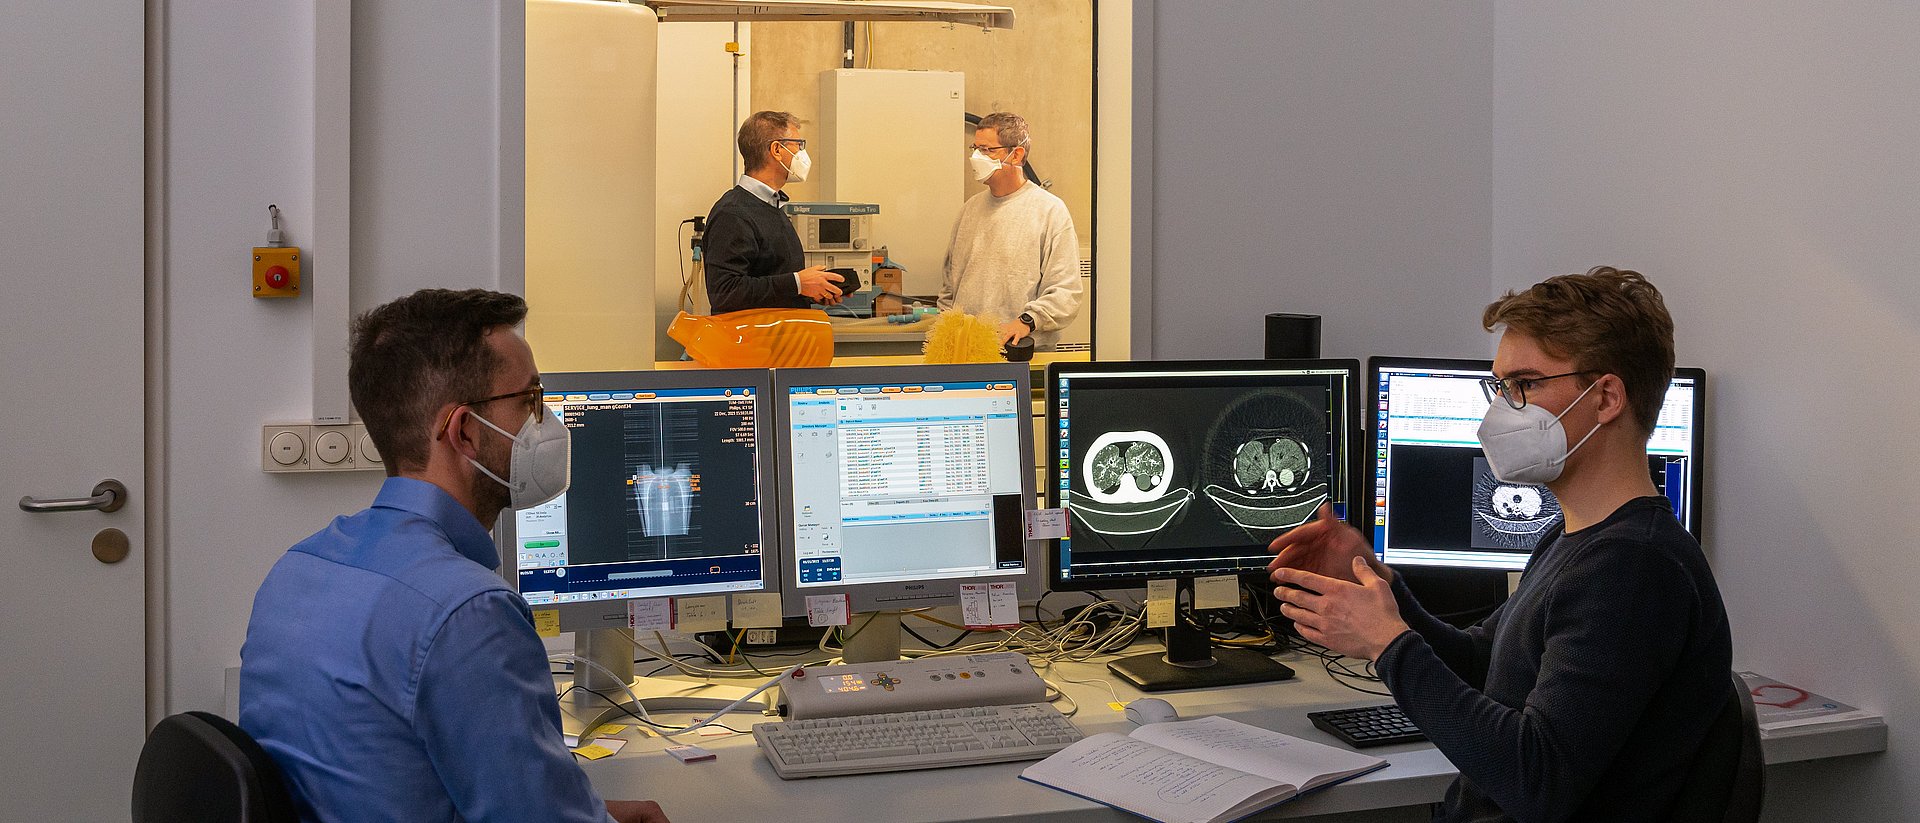 Prof. Dr. Franz Pfeiffer (hinten links), Professor für Biomedizinische Physik, und sein Team kombinieren in einem Prototyp klassische Röntgen-Computertomographie und Dunkelfeld-Röntgenverfahren (hinten rechts: Dr. Thomas Koehler, vorne links: Clemens Schmid, vorne rechts: Manuel Viermetz).